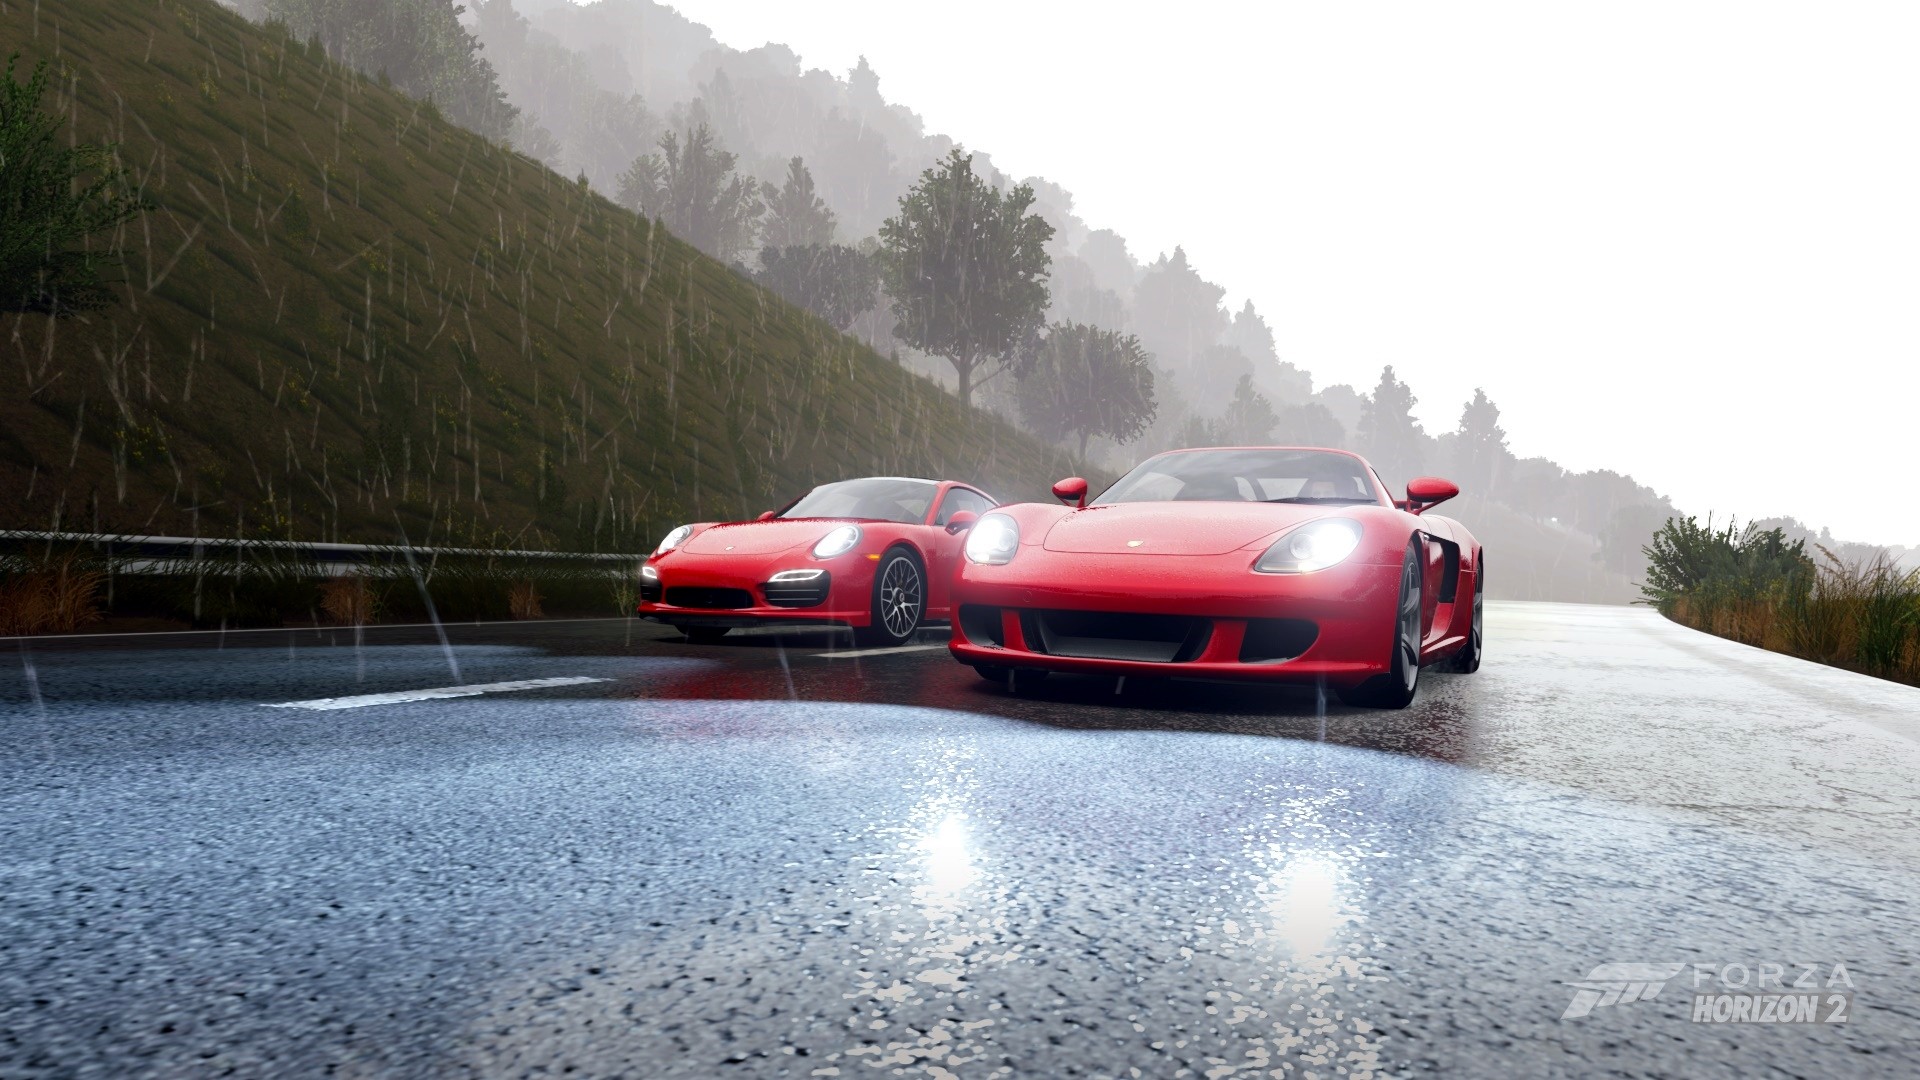 Forza Horizon 2, Porsche Carrera GT, Video Games Wallpaper